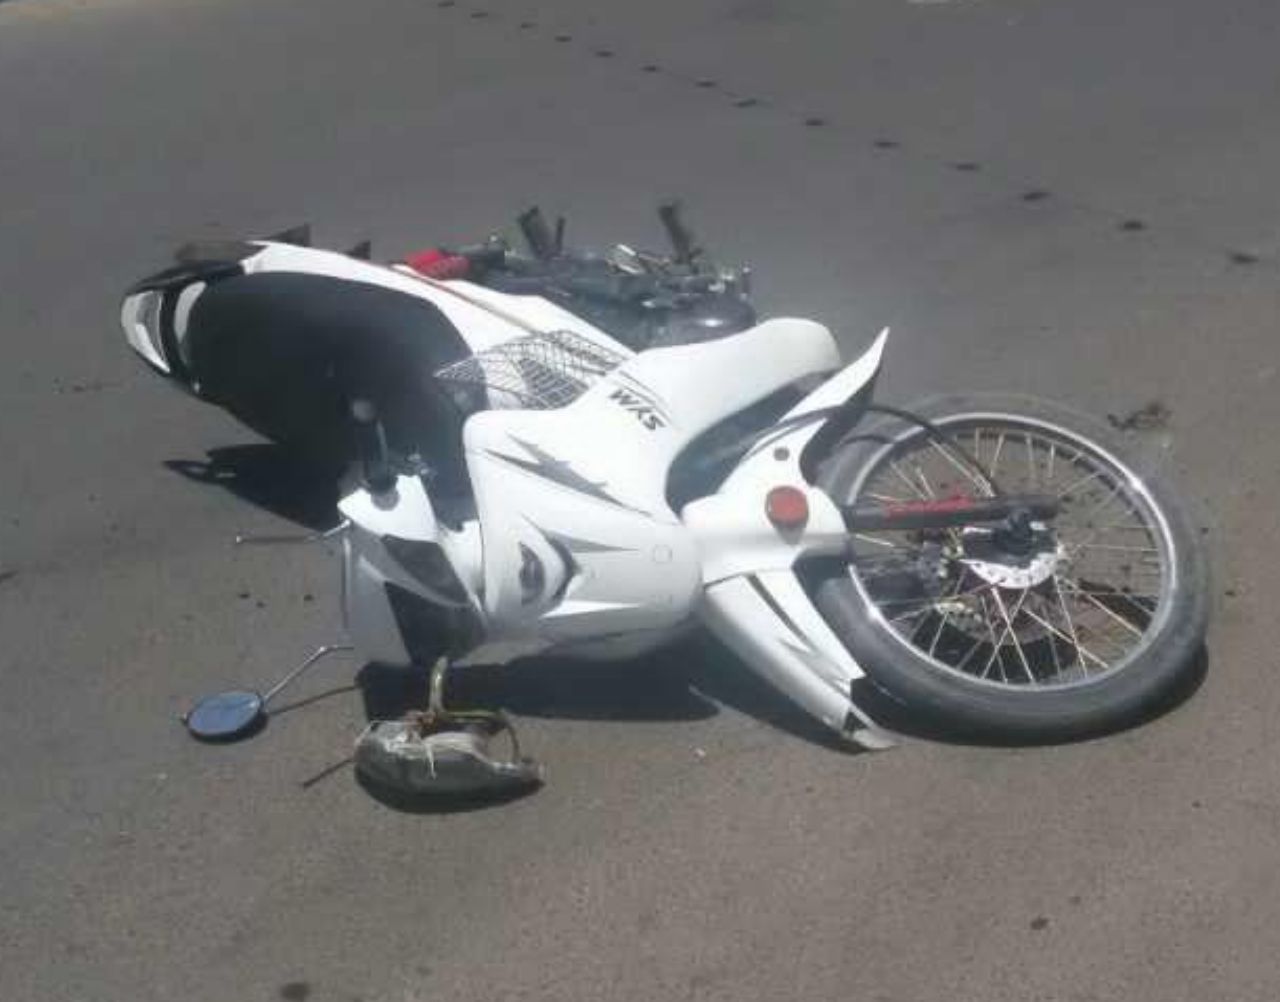 فوت خانمی جوان در برخورد دو موتور سیکلت در زرند